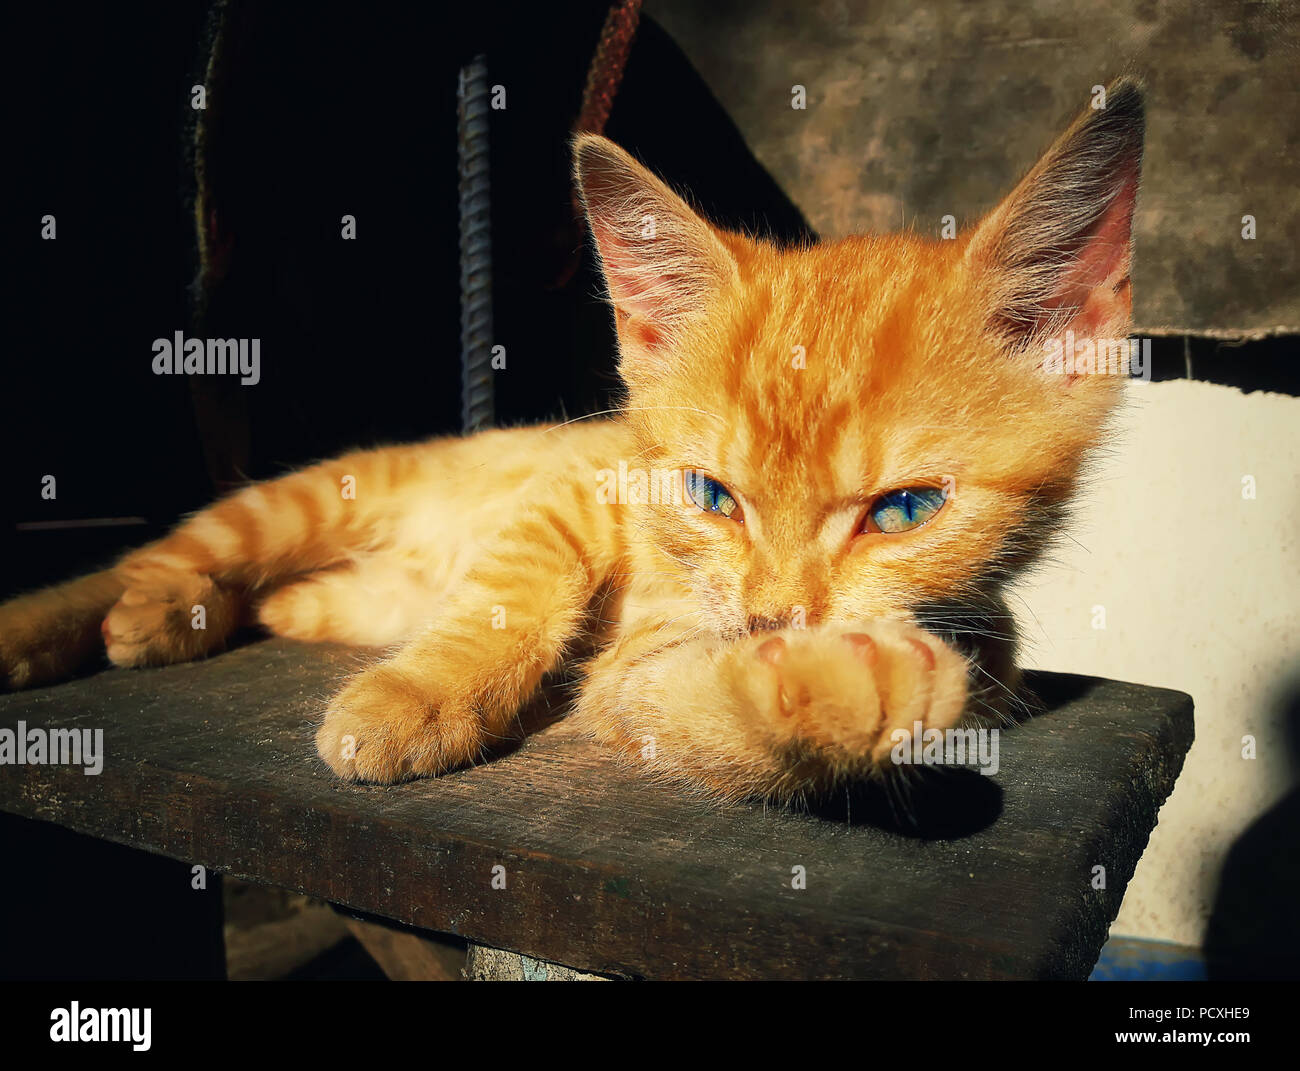 Chaton orange réfléchis posing. La malice et de l'adorable cat portant sur un pays vintage. Adorable la paresse. Banque D'Images